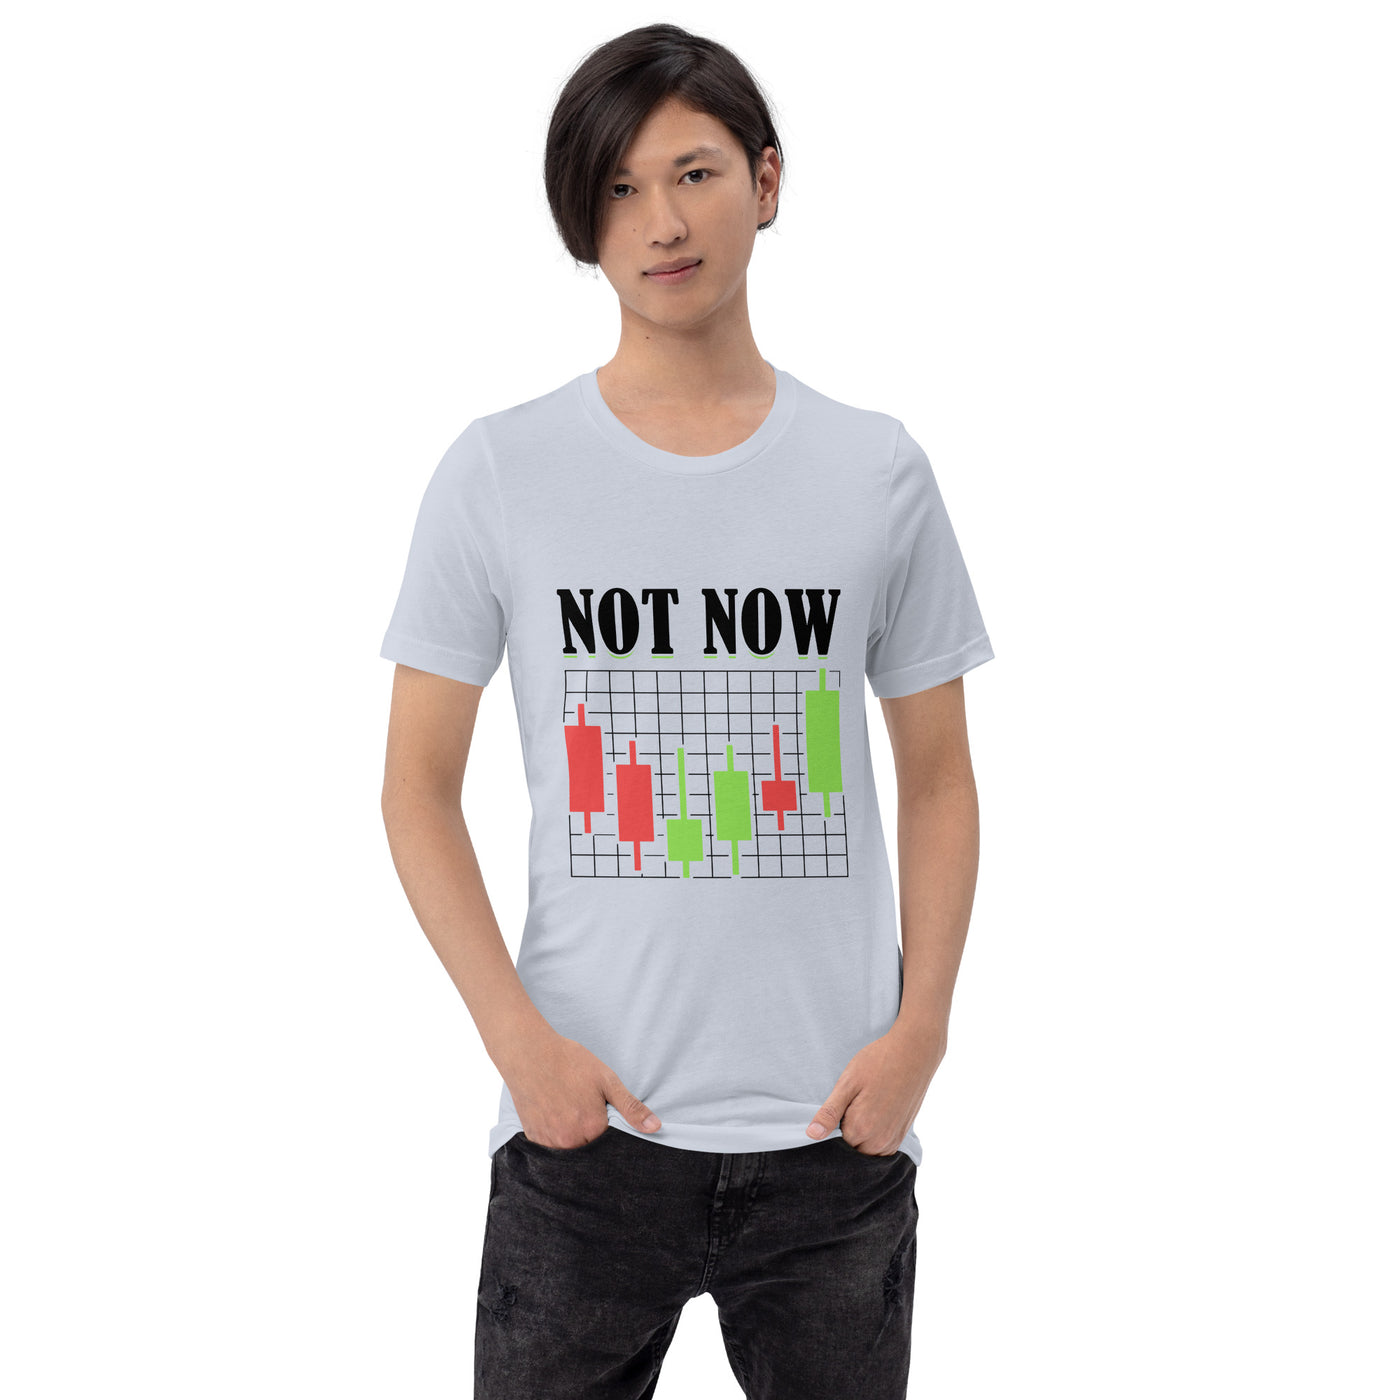 Not Now in Dark Text - Unisex t-shirt